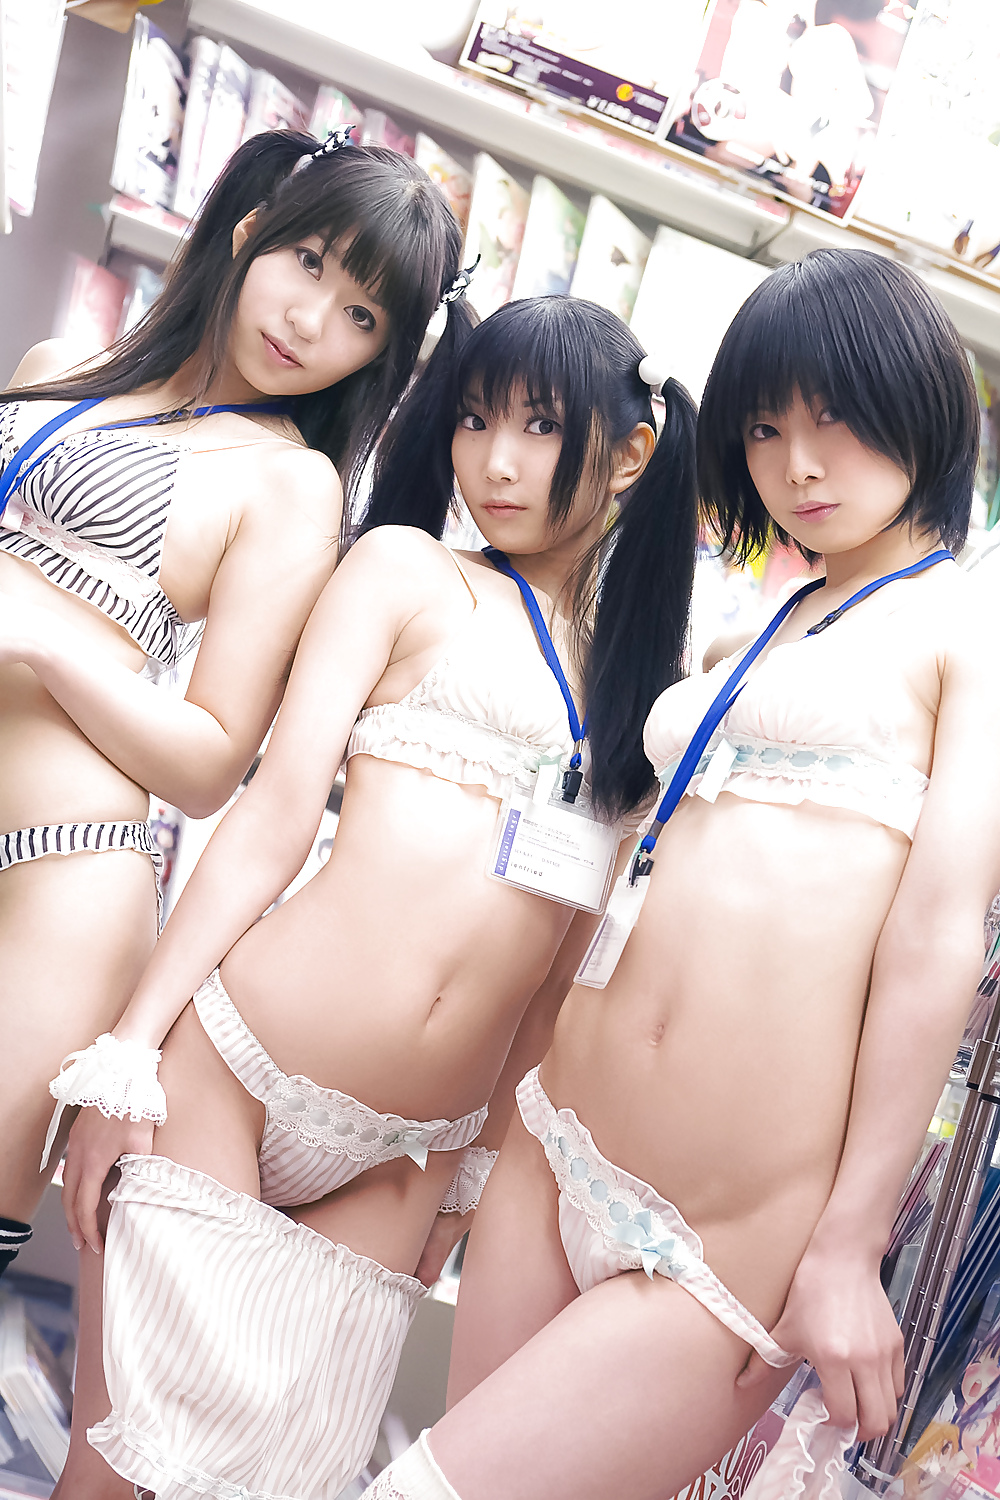 Lenfried, Iiniku Ushijima, and Pude Sexy Japanese Girls #9050583